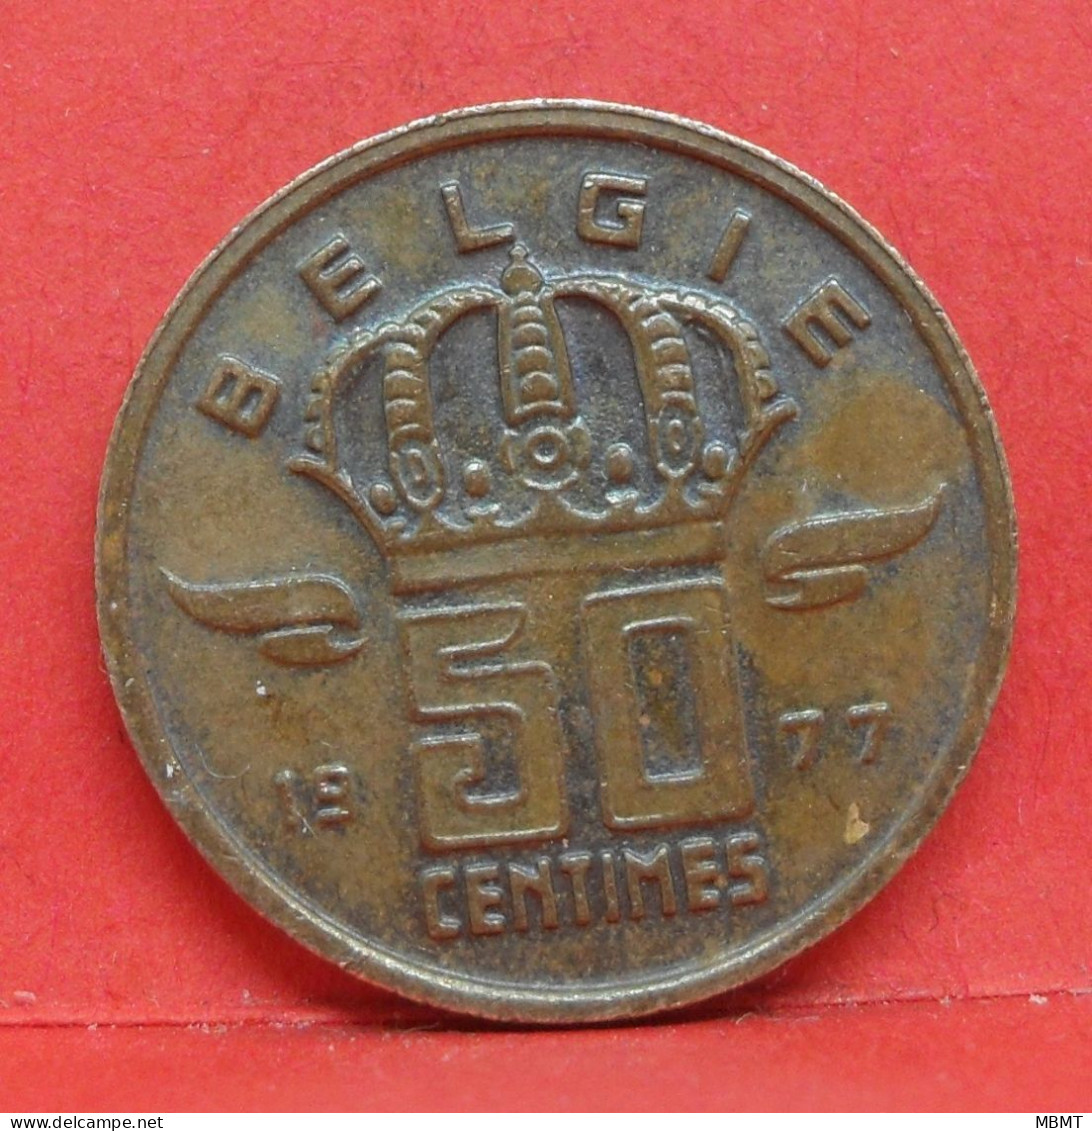 50 Centimes 1977 - TTB - Pièce Monnaie Belgie - Article N°1895 - 50 Centimes